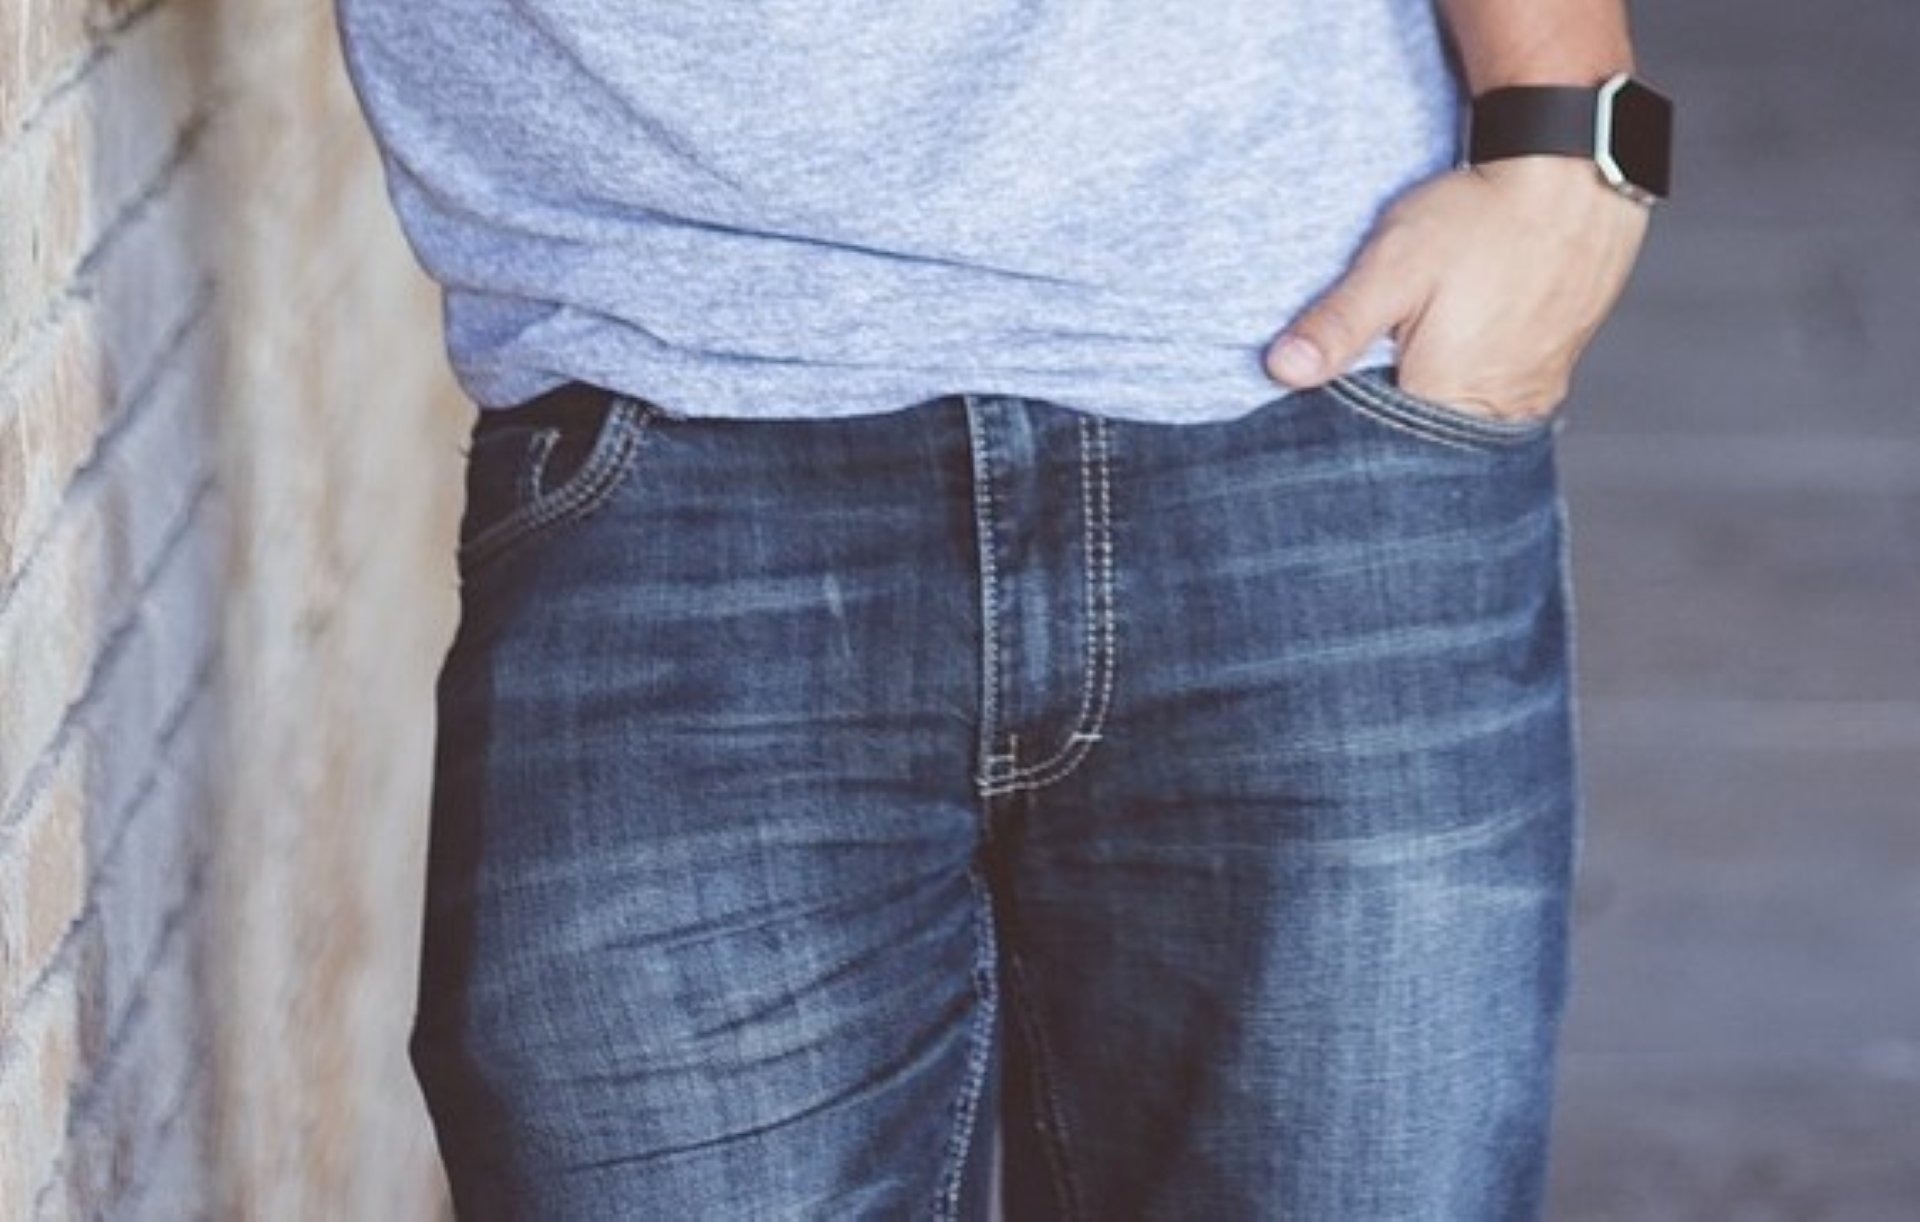 Uns jeans d'home en una imatge d'arxiu / PIXABAY